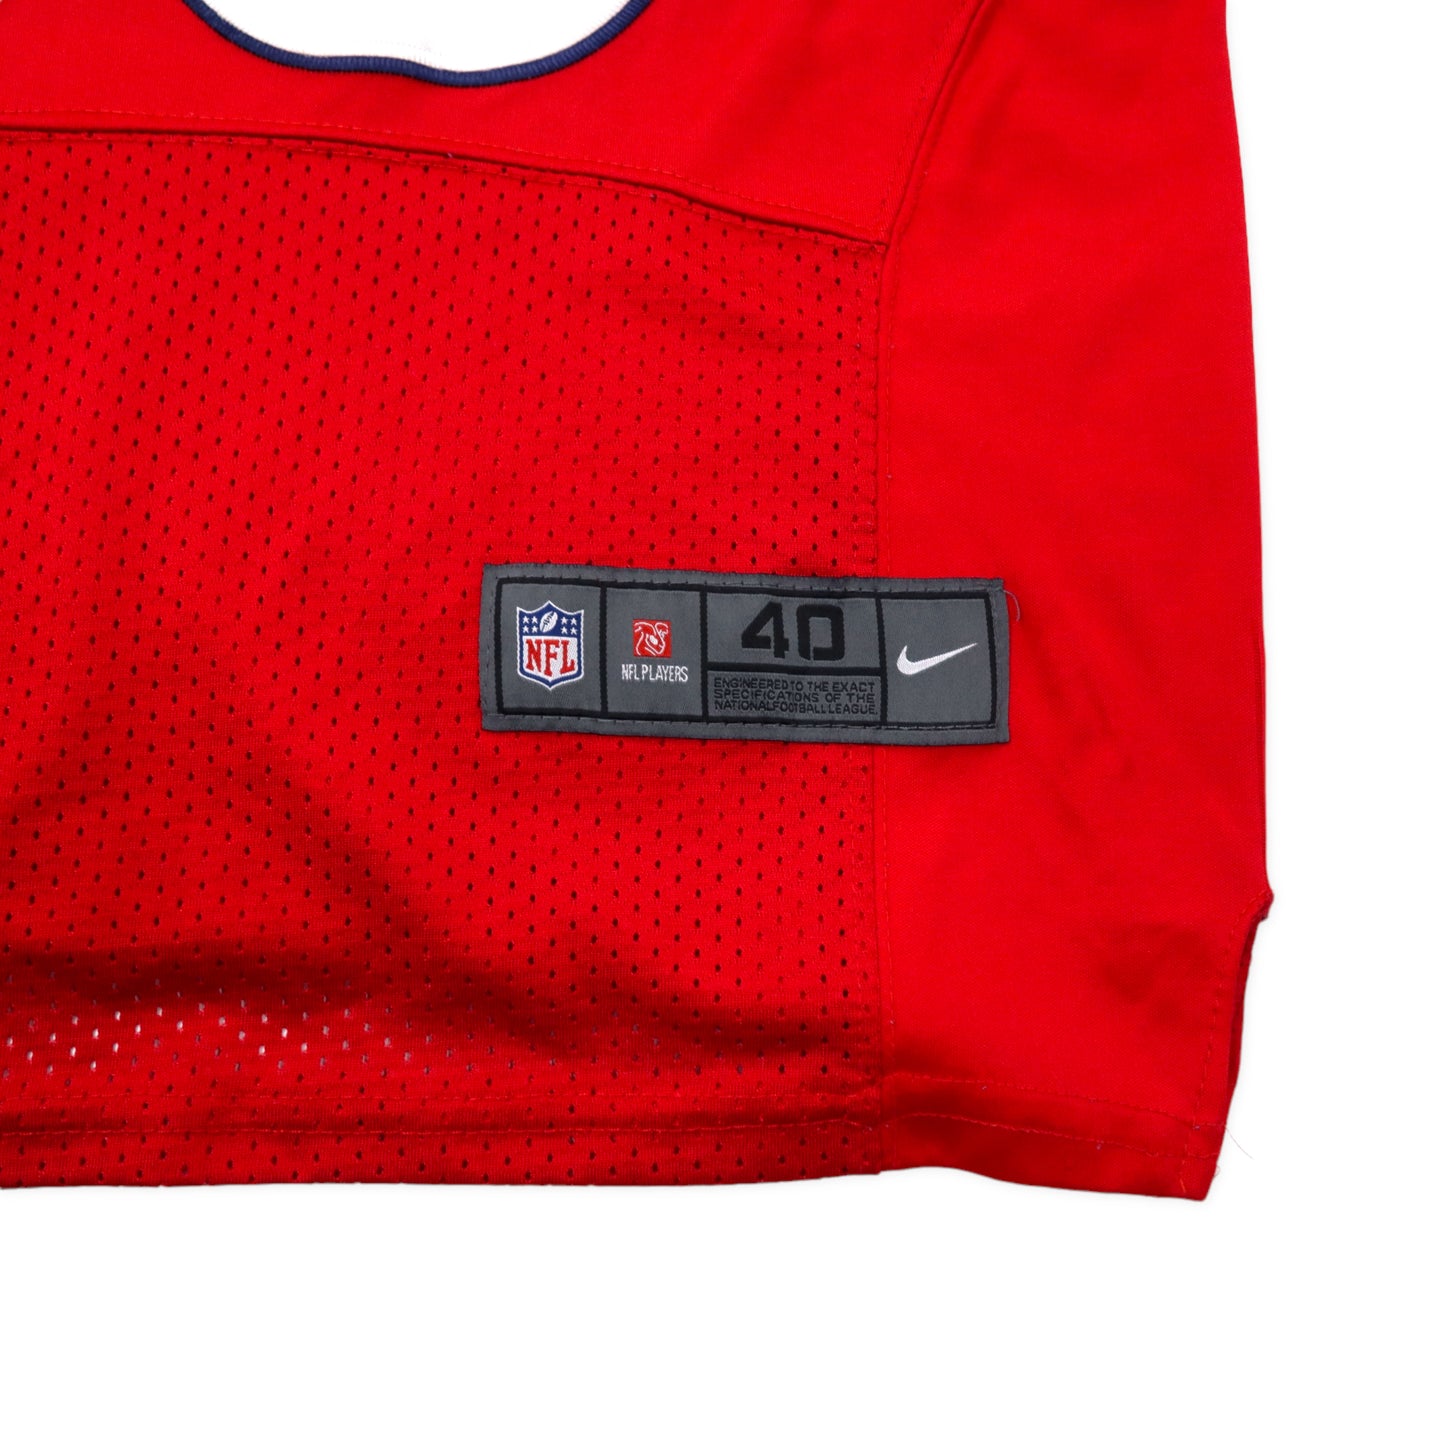 NIKE NFL ビッグサイズ ゲームシャツ 40 レッド ポリエステル メッシュ TEXANS ナンバリング A.JOHNSON